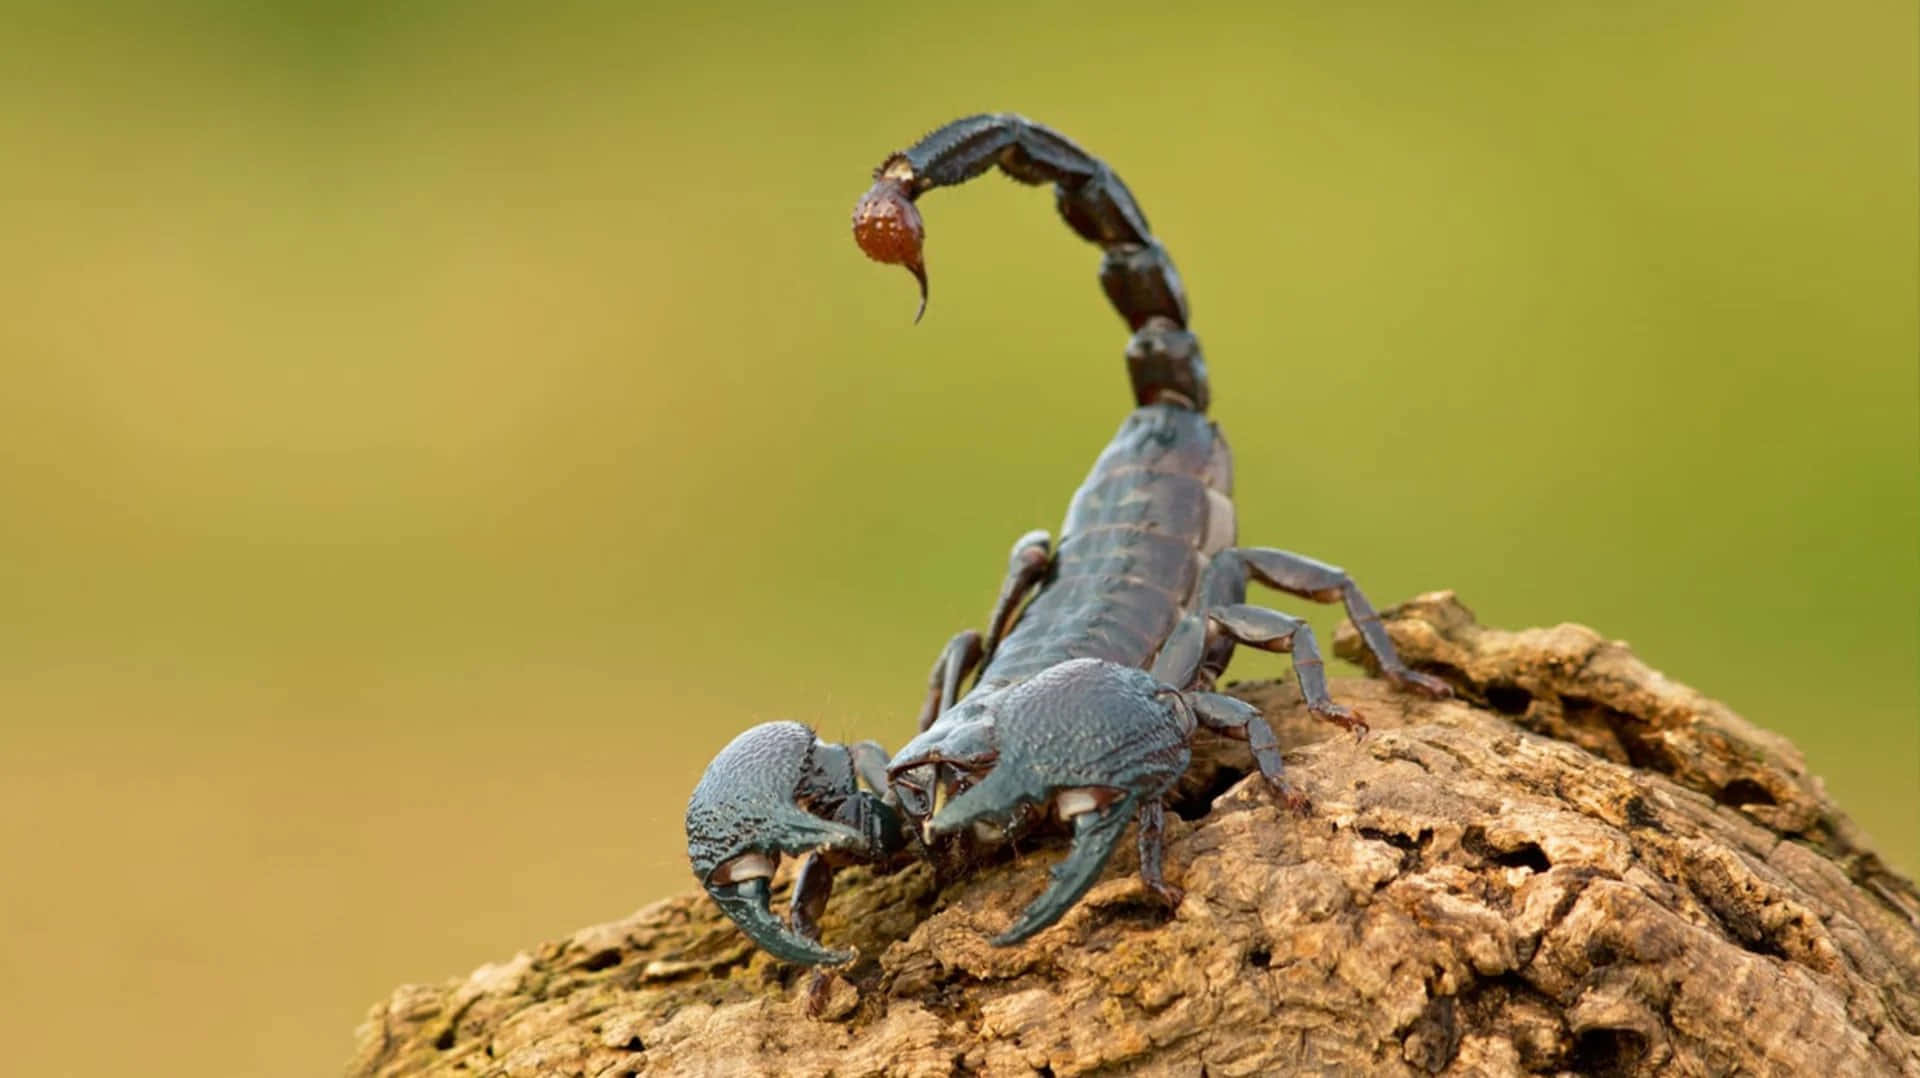 Einewilde Skorpion Bereit Zum Angriff.